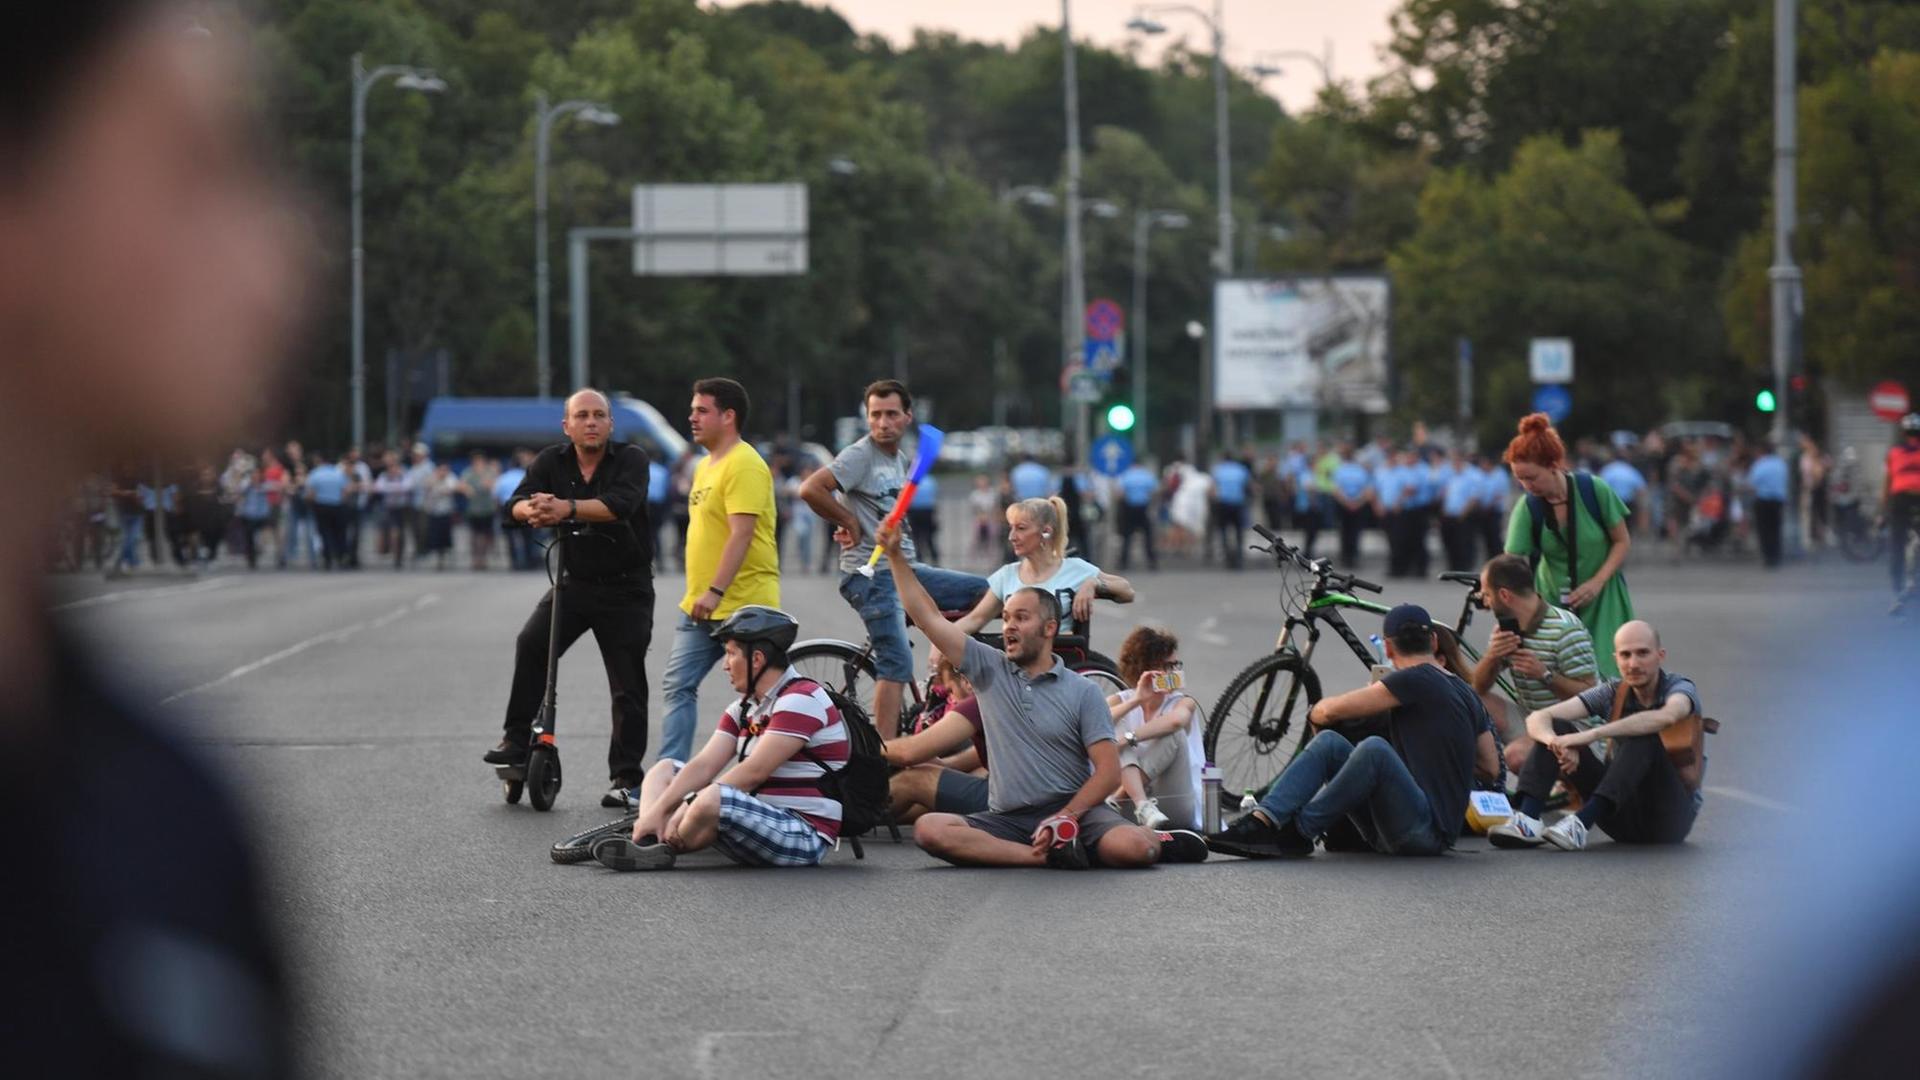 Am 4. Juli 2018 protestieren die Menschen vor dem rumänischen Regierungssitz in Bukarest.